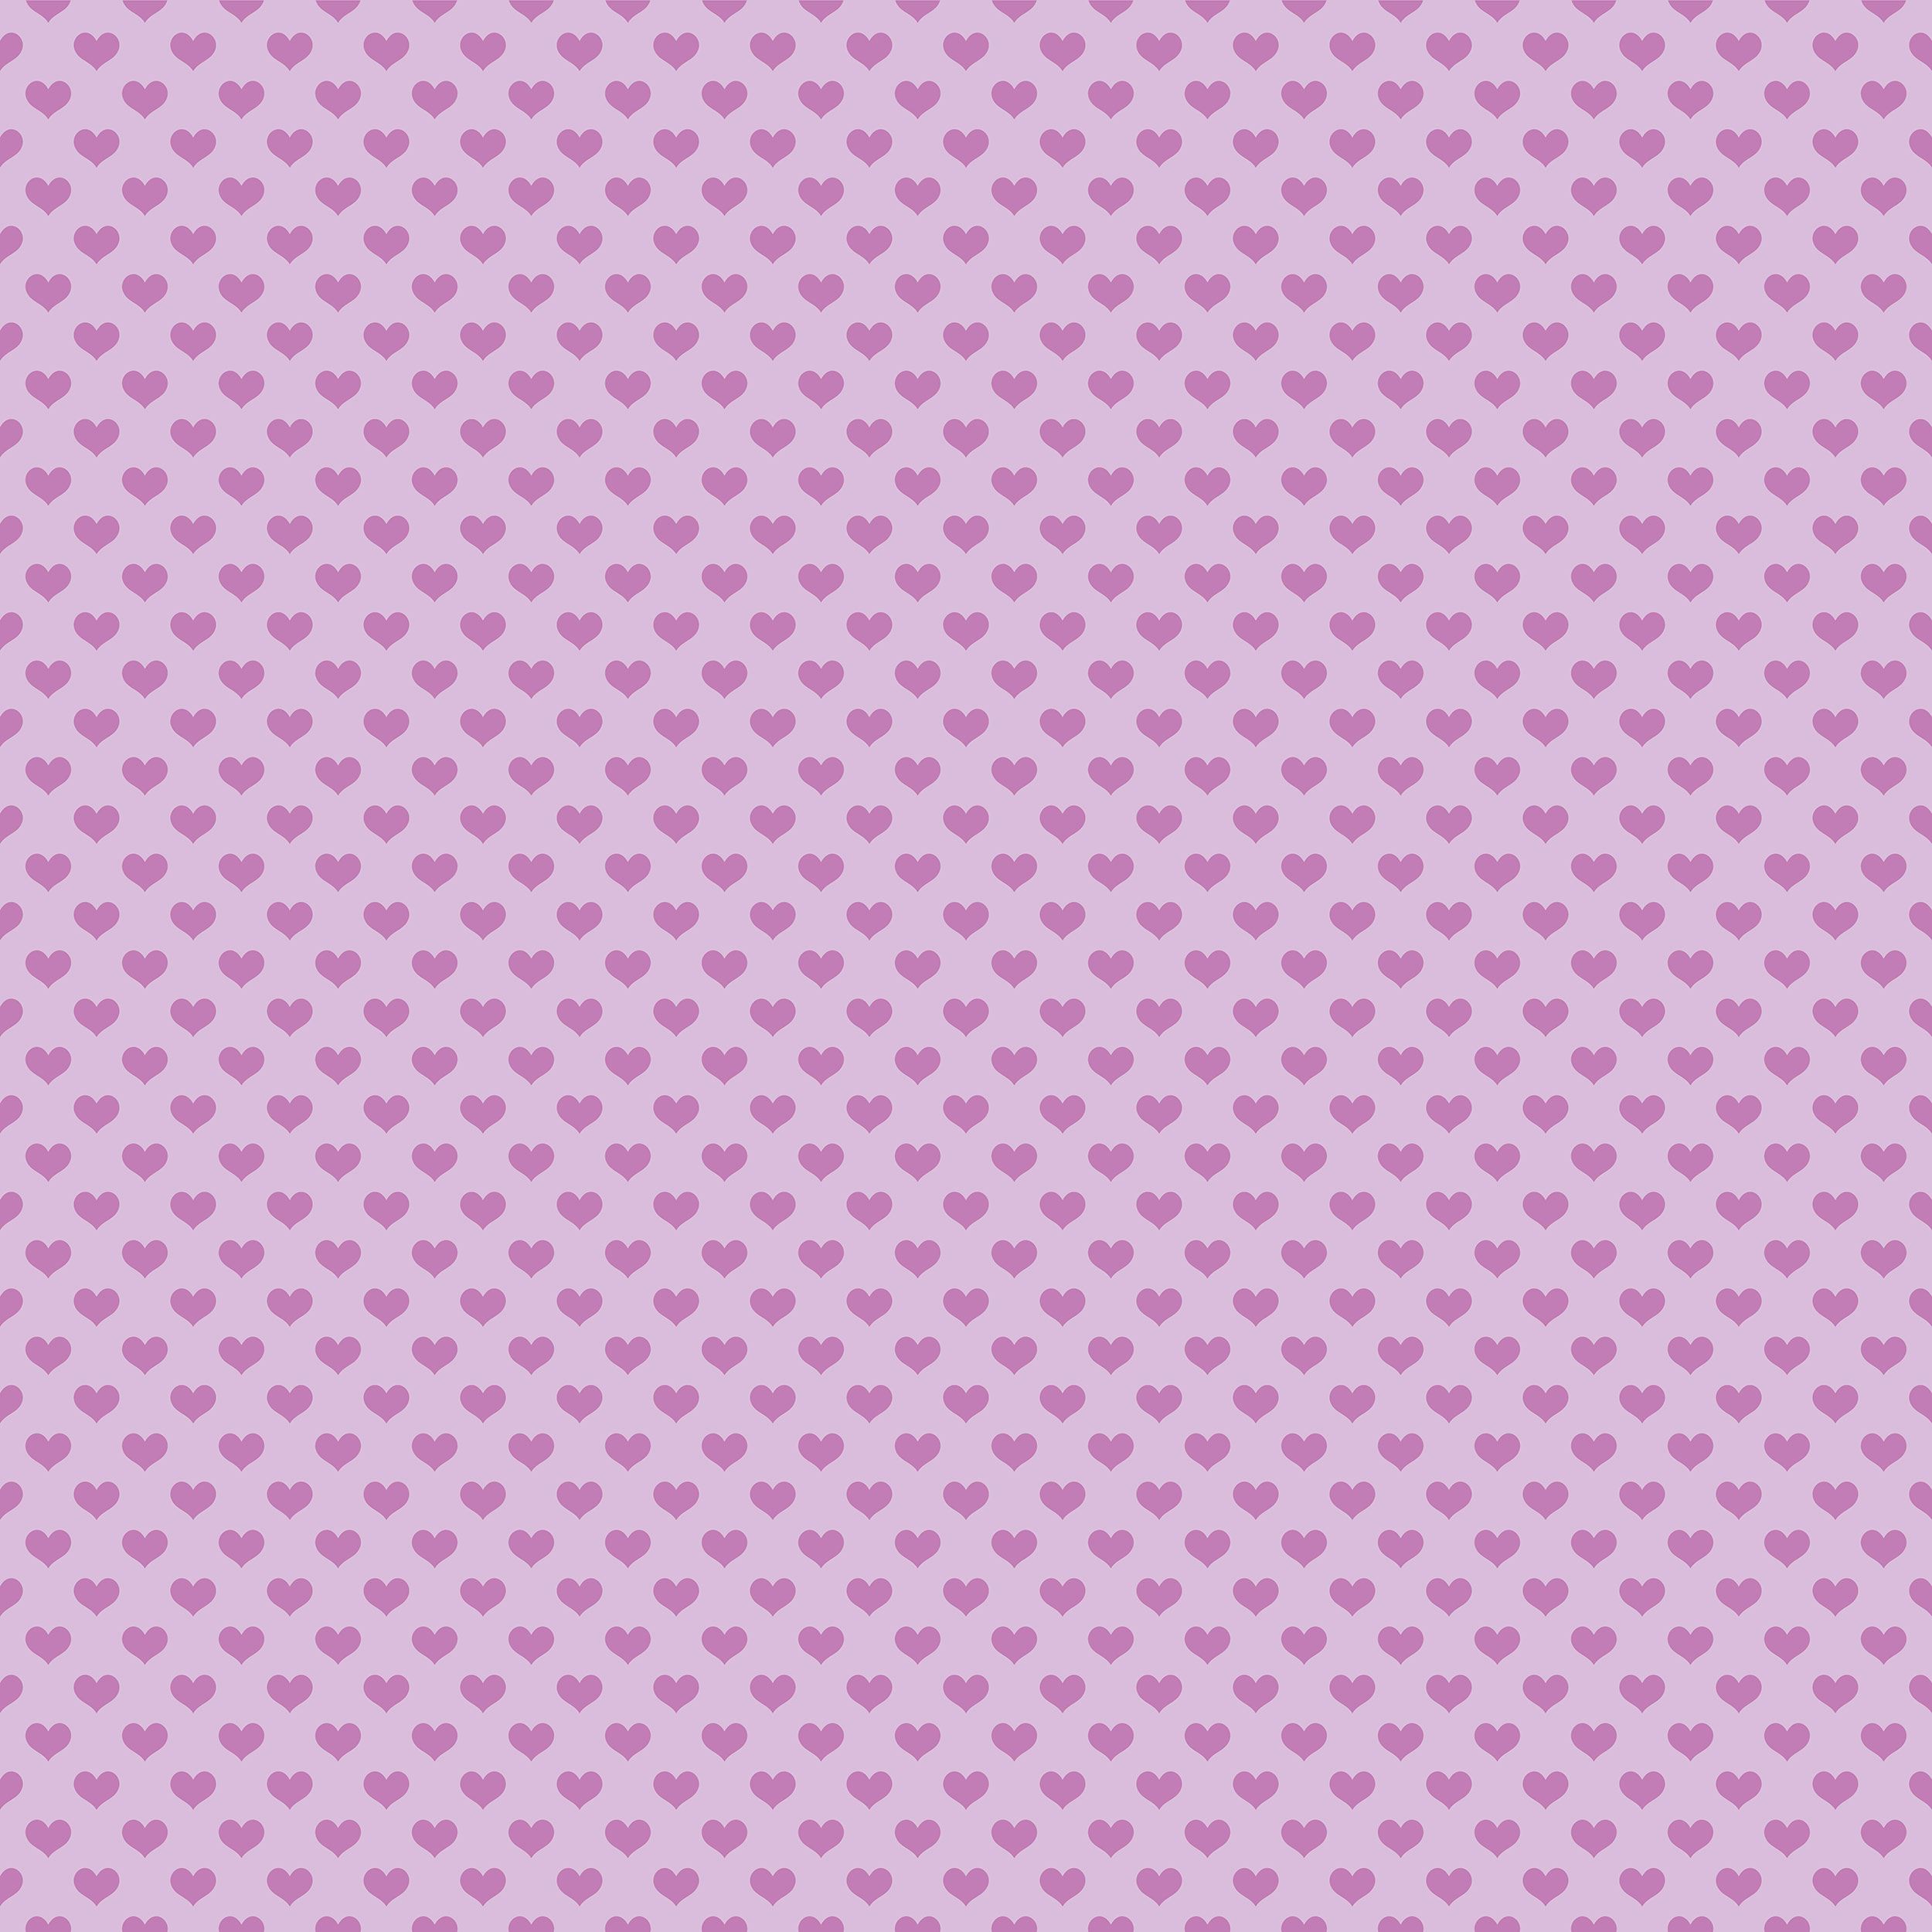 ハートデザインの壁紙 背景素材 無料画像no 268 二色ハート 紫